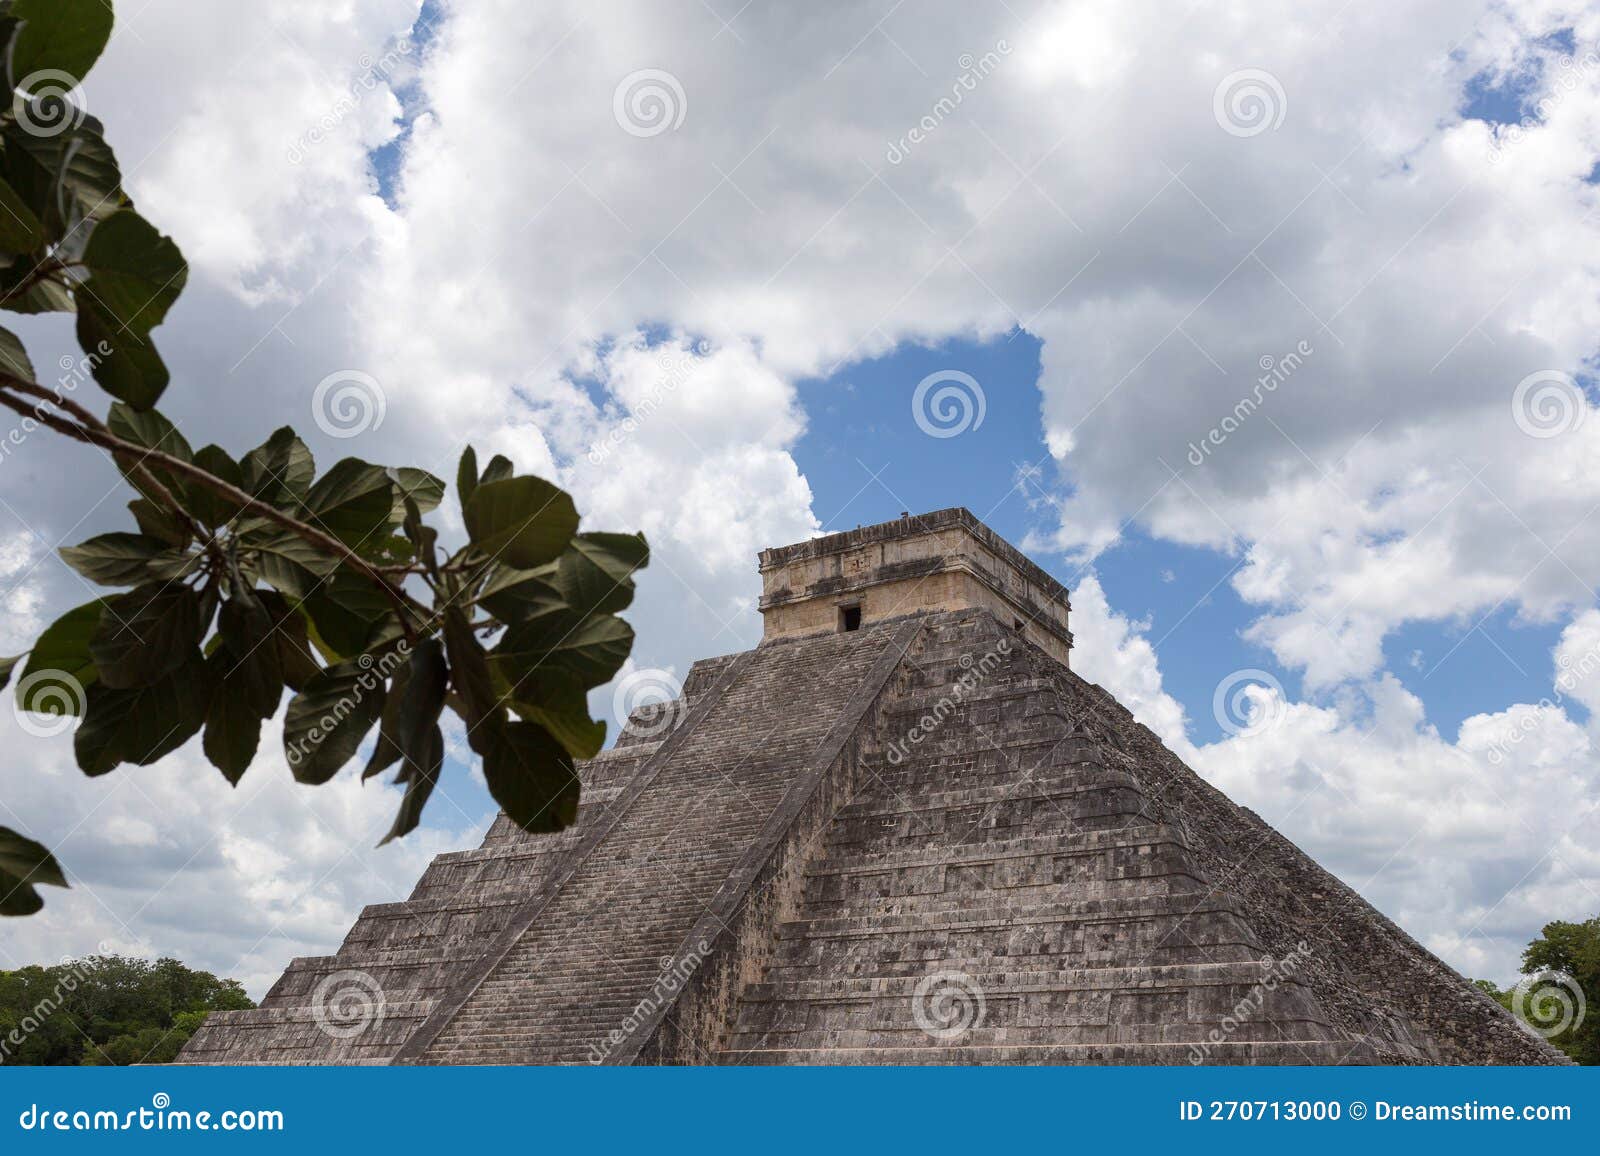 pyramid of kukulkan in chichÃ©n itzÃ¡ - mÃ©xico, yucatÃ¡n